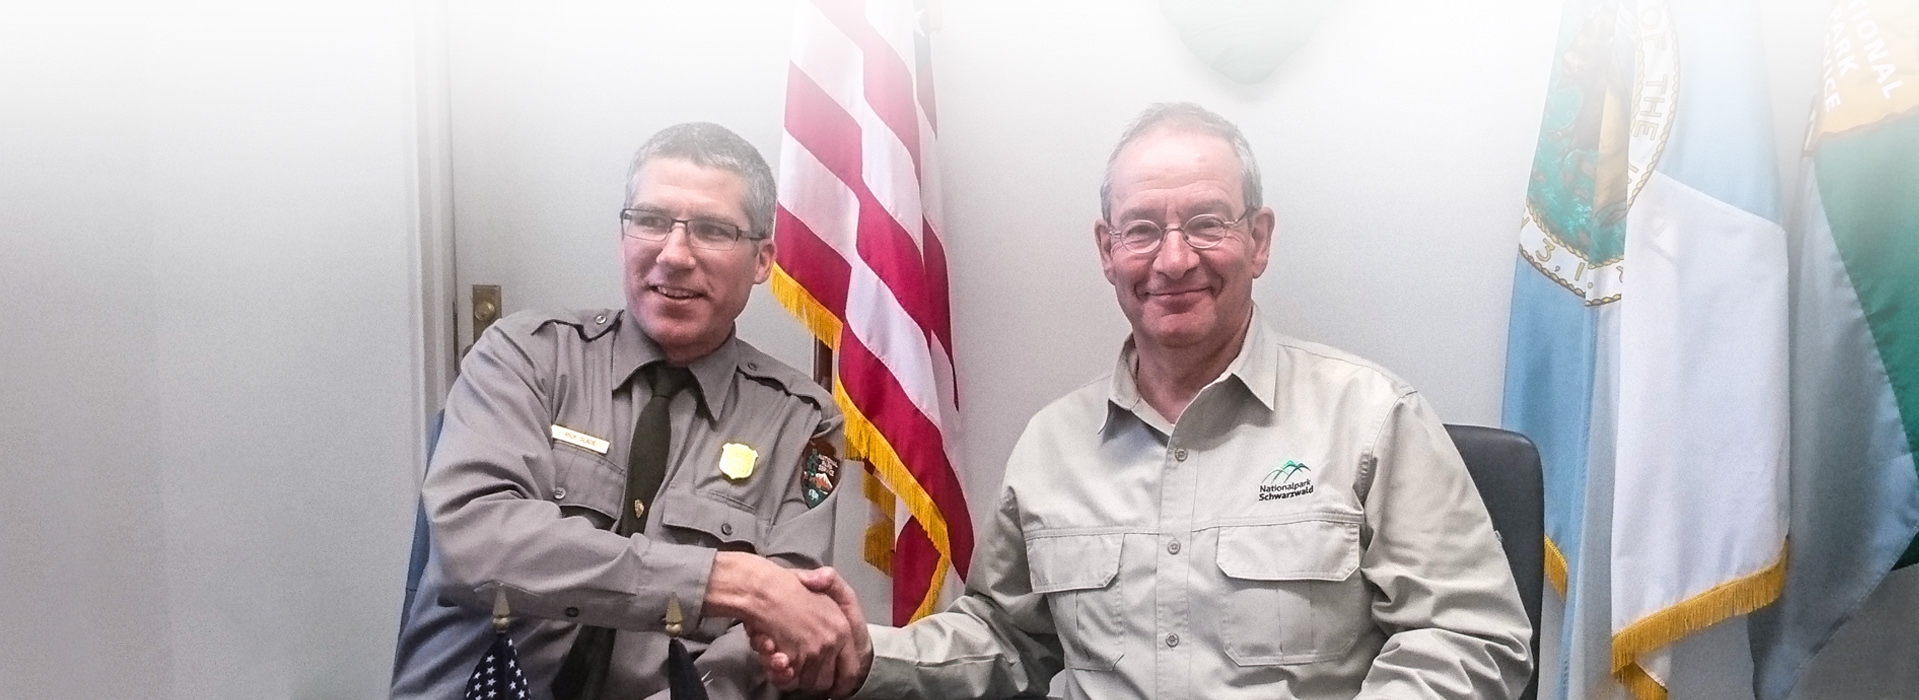 Handshake der Nationalparkleiter Thomas Waldenspuhl und Rick Slade